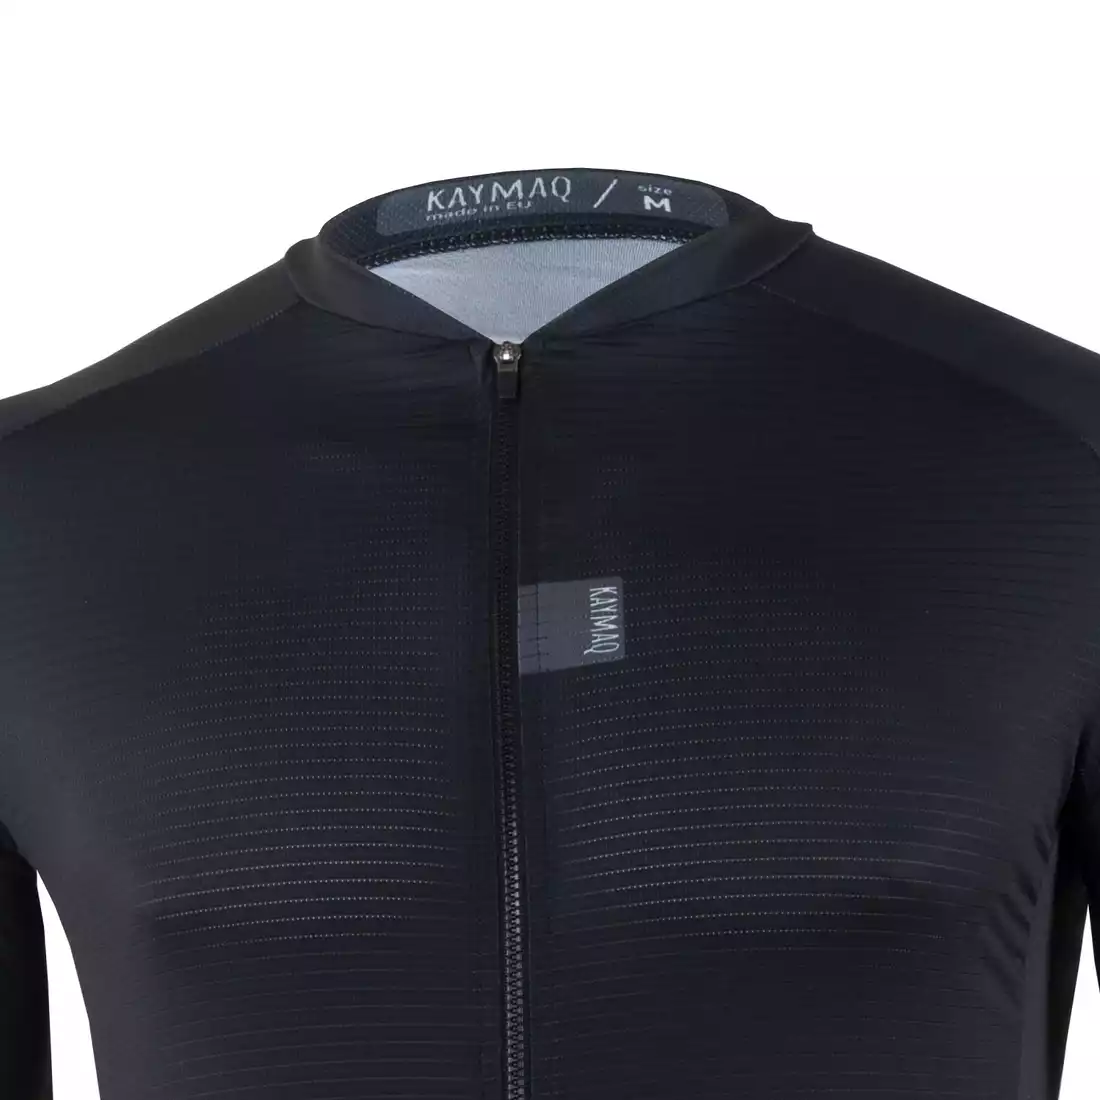 KAYMAQ DESIGN KYQ-SS-1001-3 men's cycling short sleeve jersey black